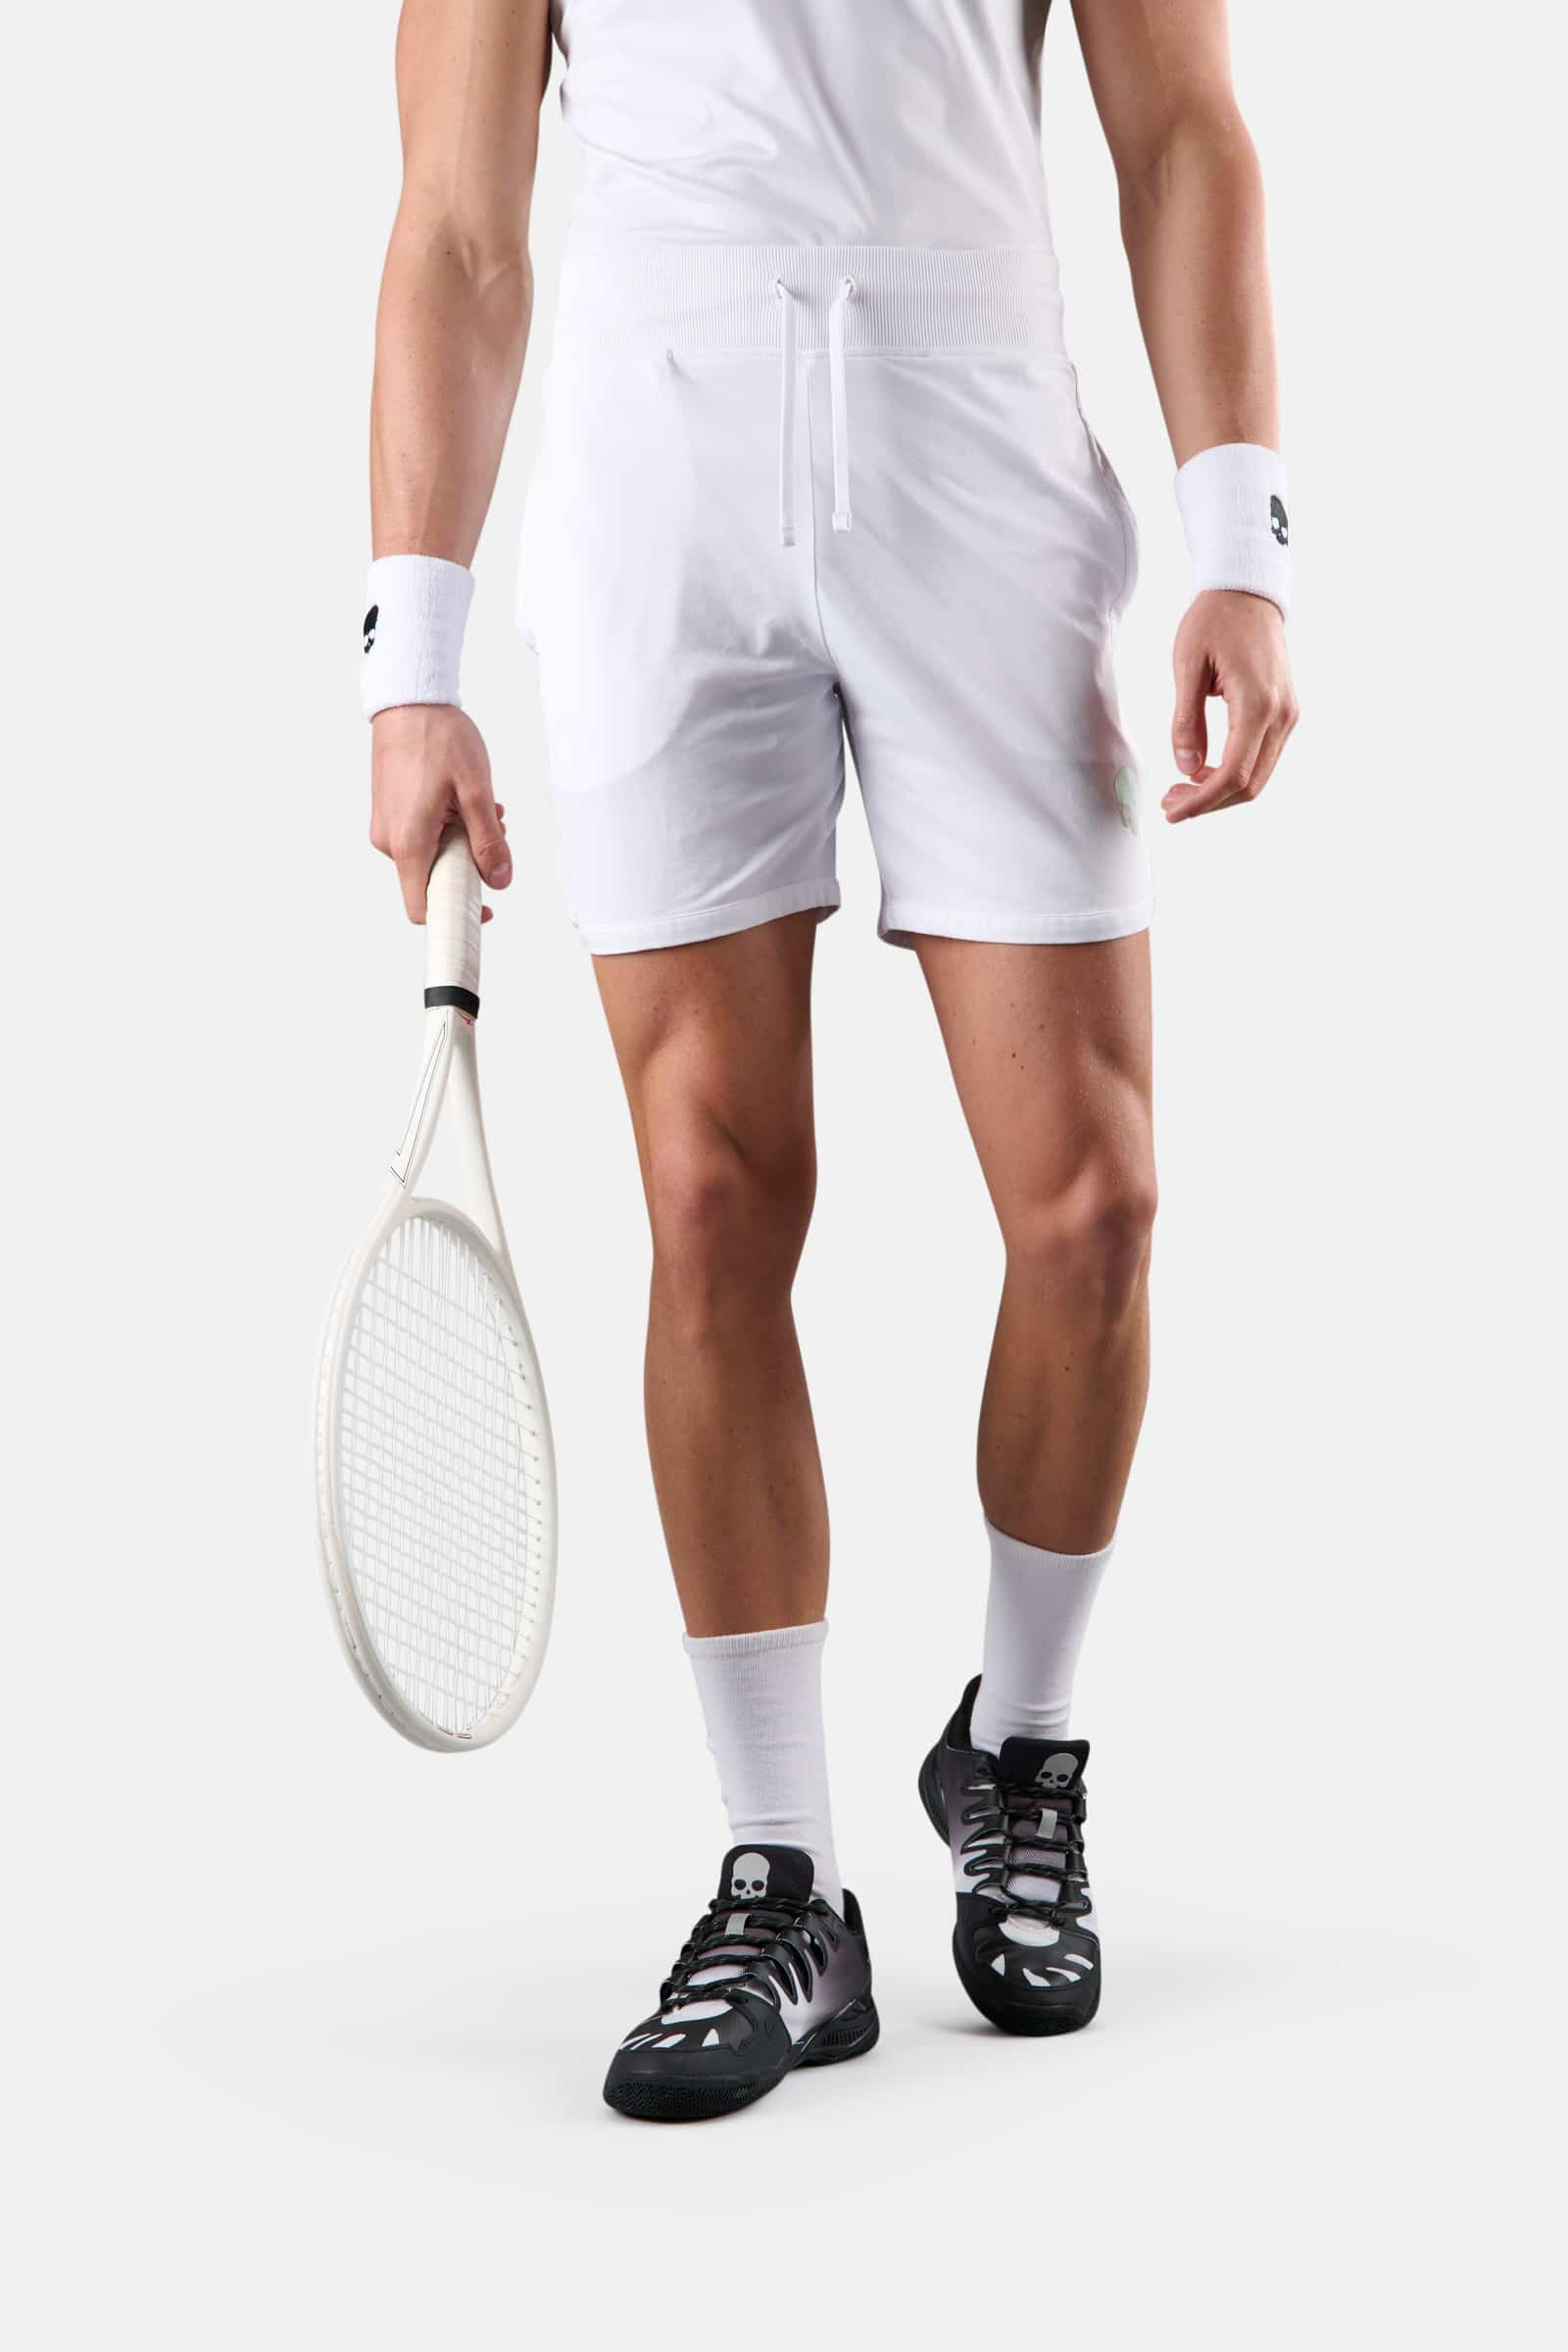 TECH SHORTS - WHITE - Hydrogen - Luxury Sportwear